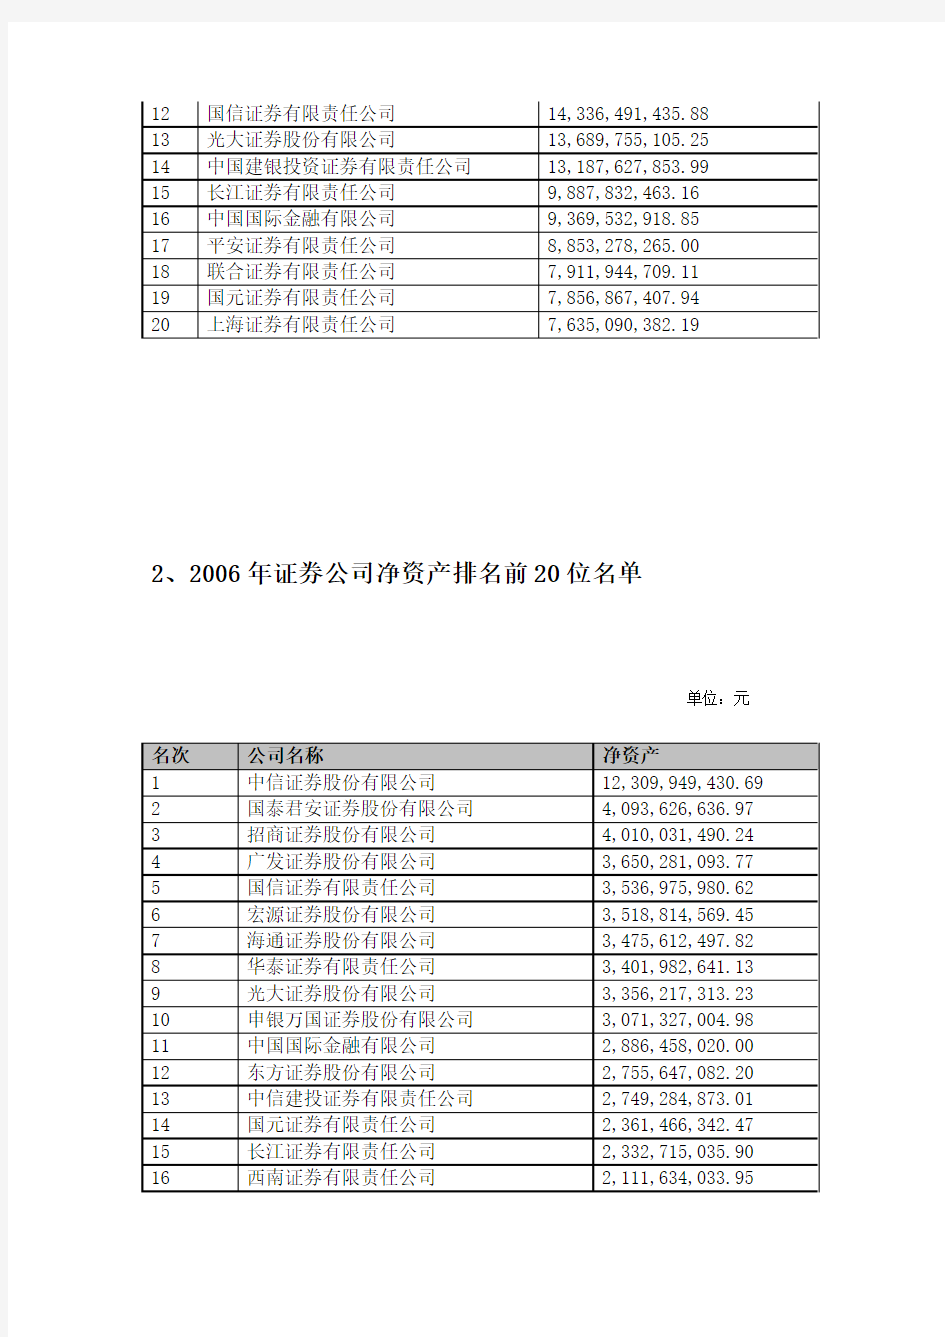 度证券公司会员财务指标排名前20名情况中国证券业协会公布